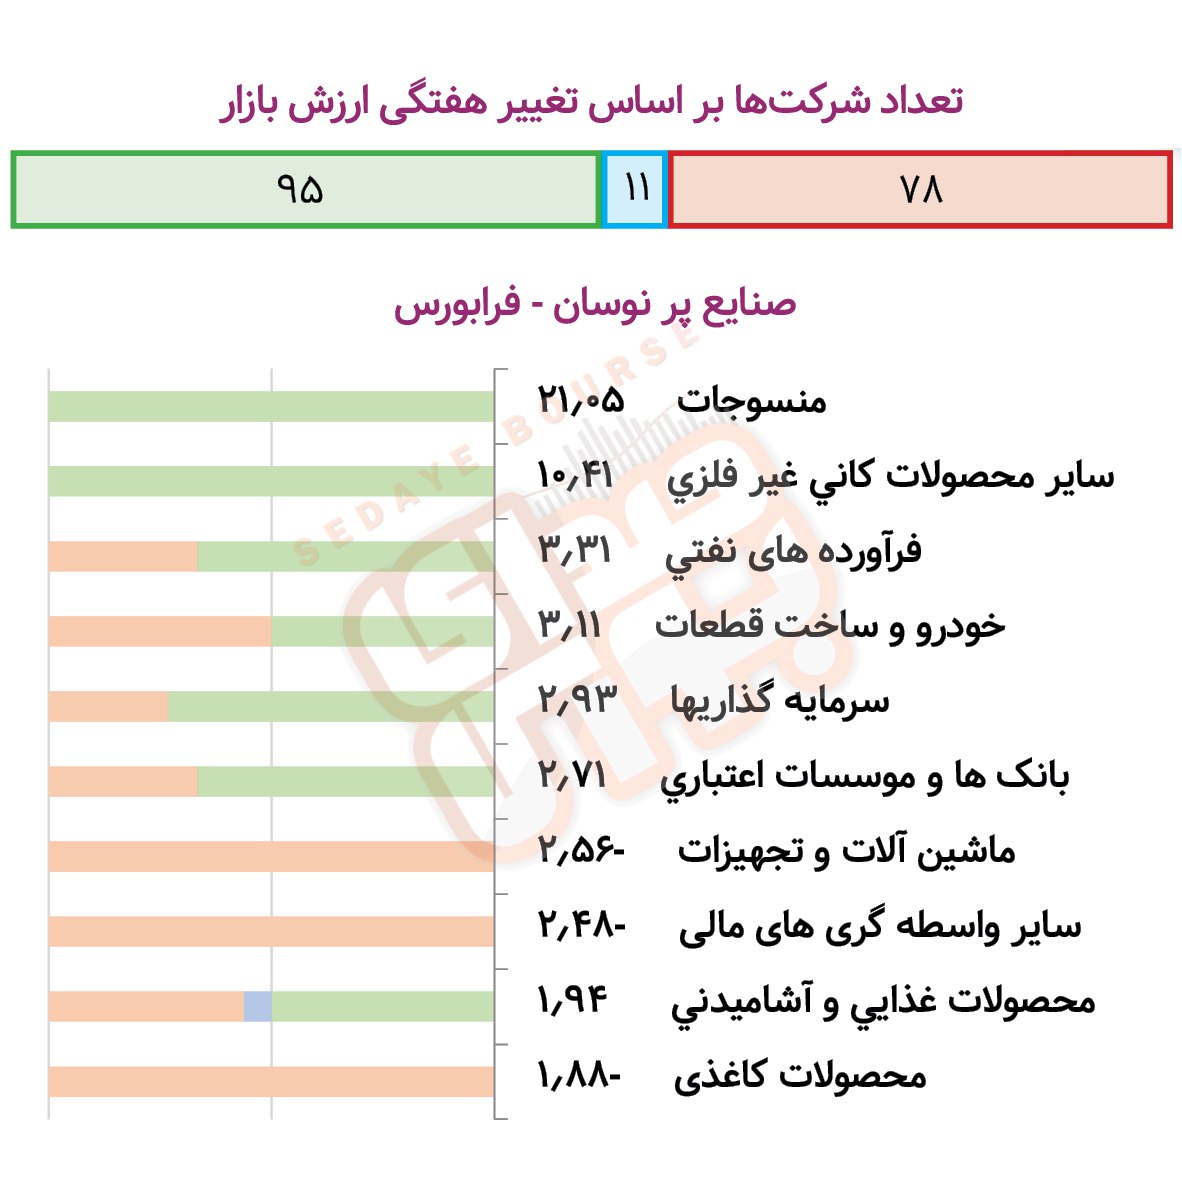 صنایع پرنوسان بورسی و فرابورسی در هفته گذشته